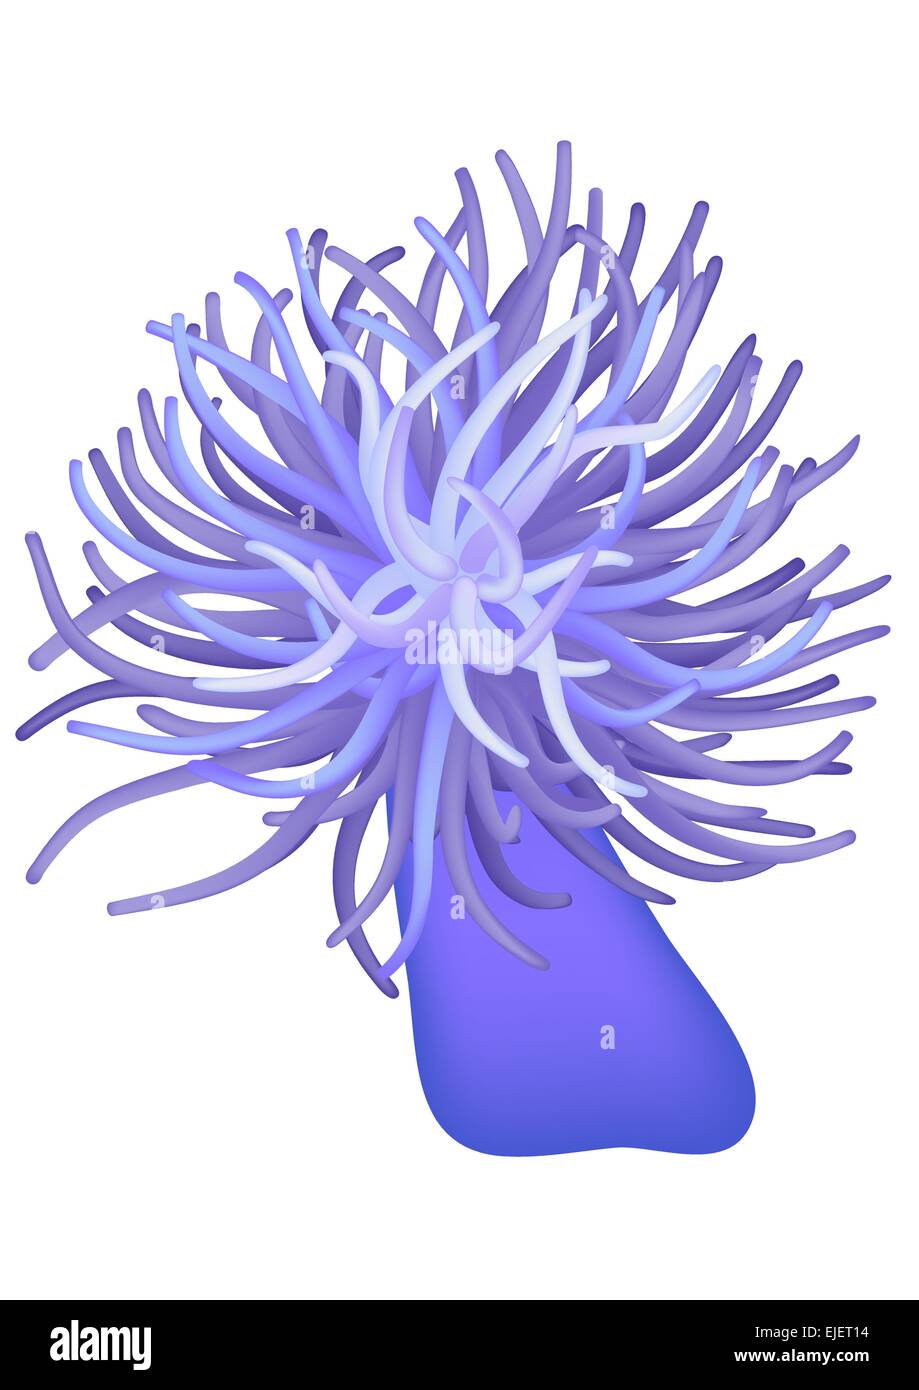 Illustration de l'anémone de mer - seaflower - vector Illustration de Vecteur